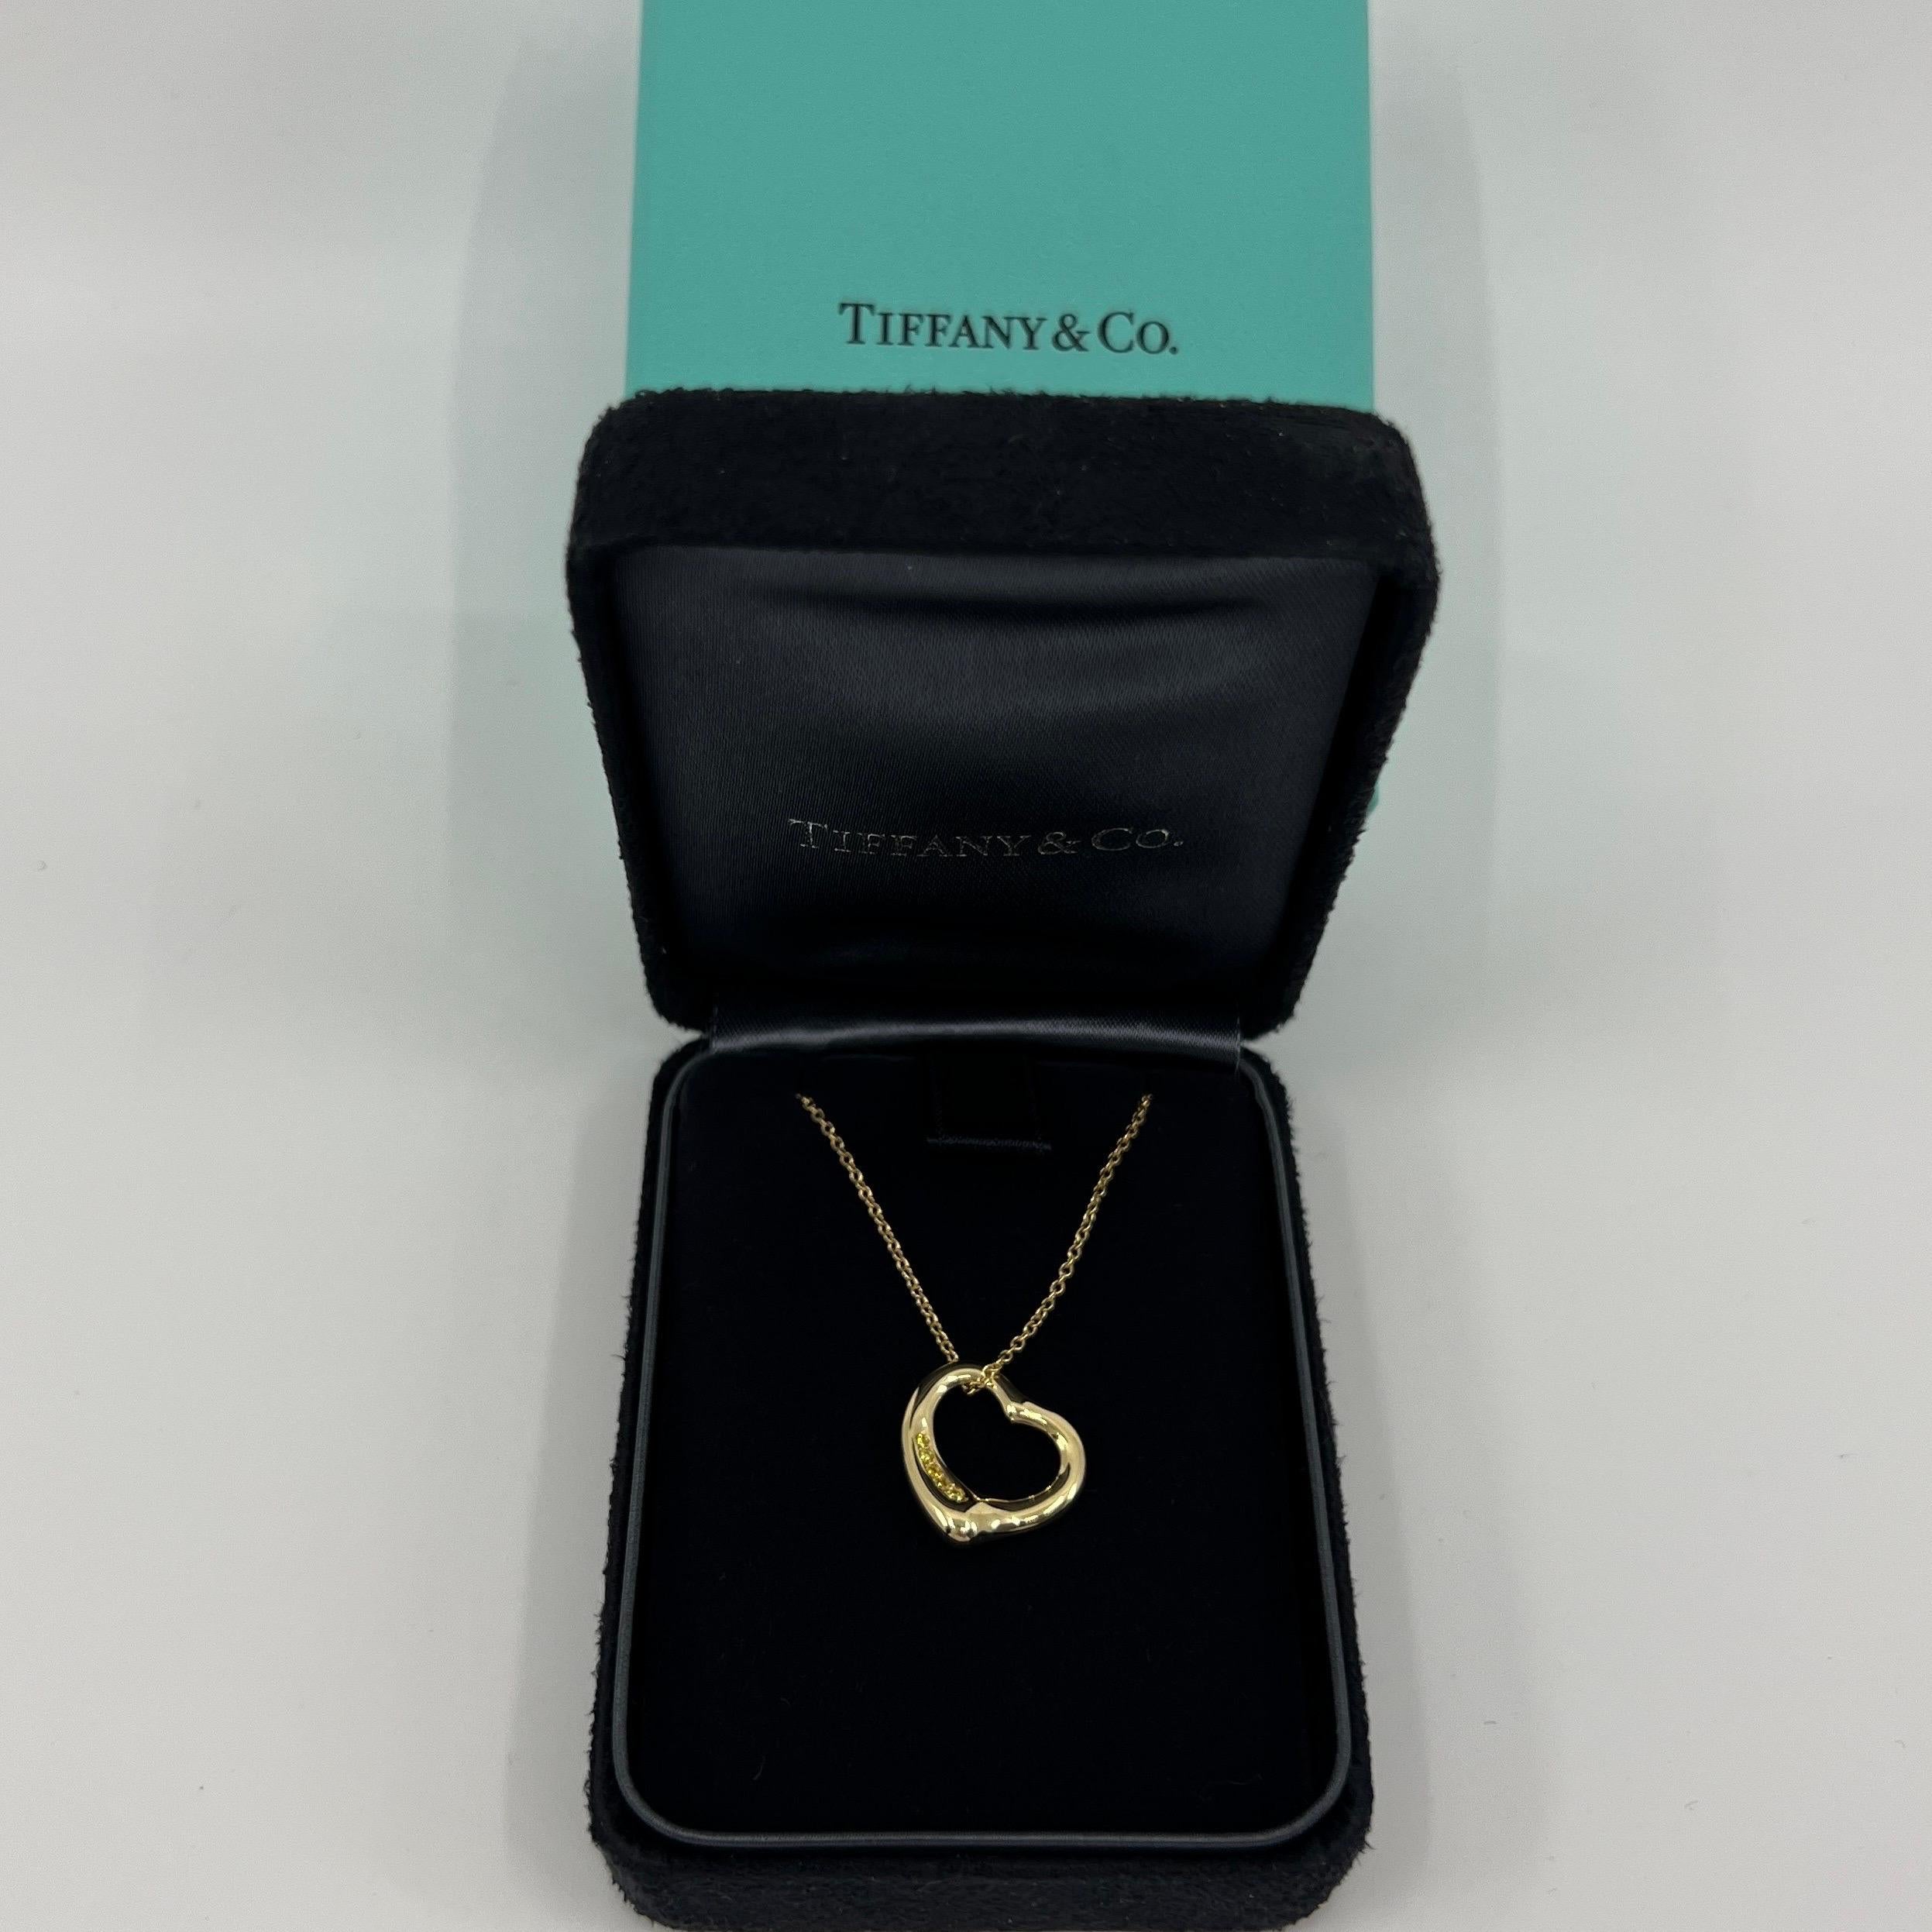 Tiffany & Co. Elsa Peretti Open Heart Yellow Diamond 18k Gold Pendant Necklace For Sale 4